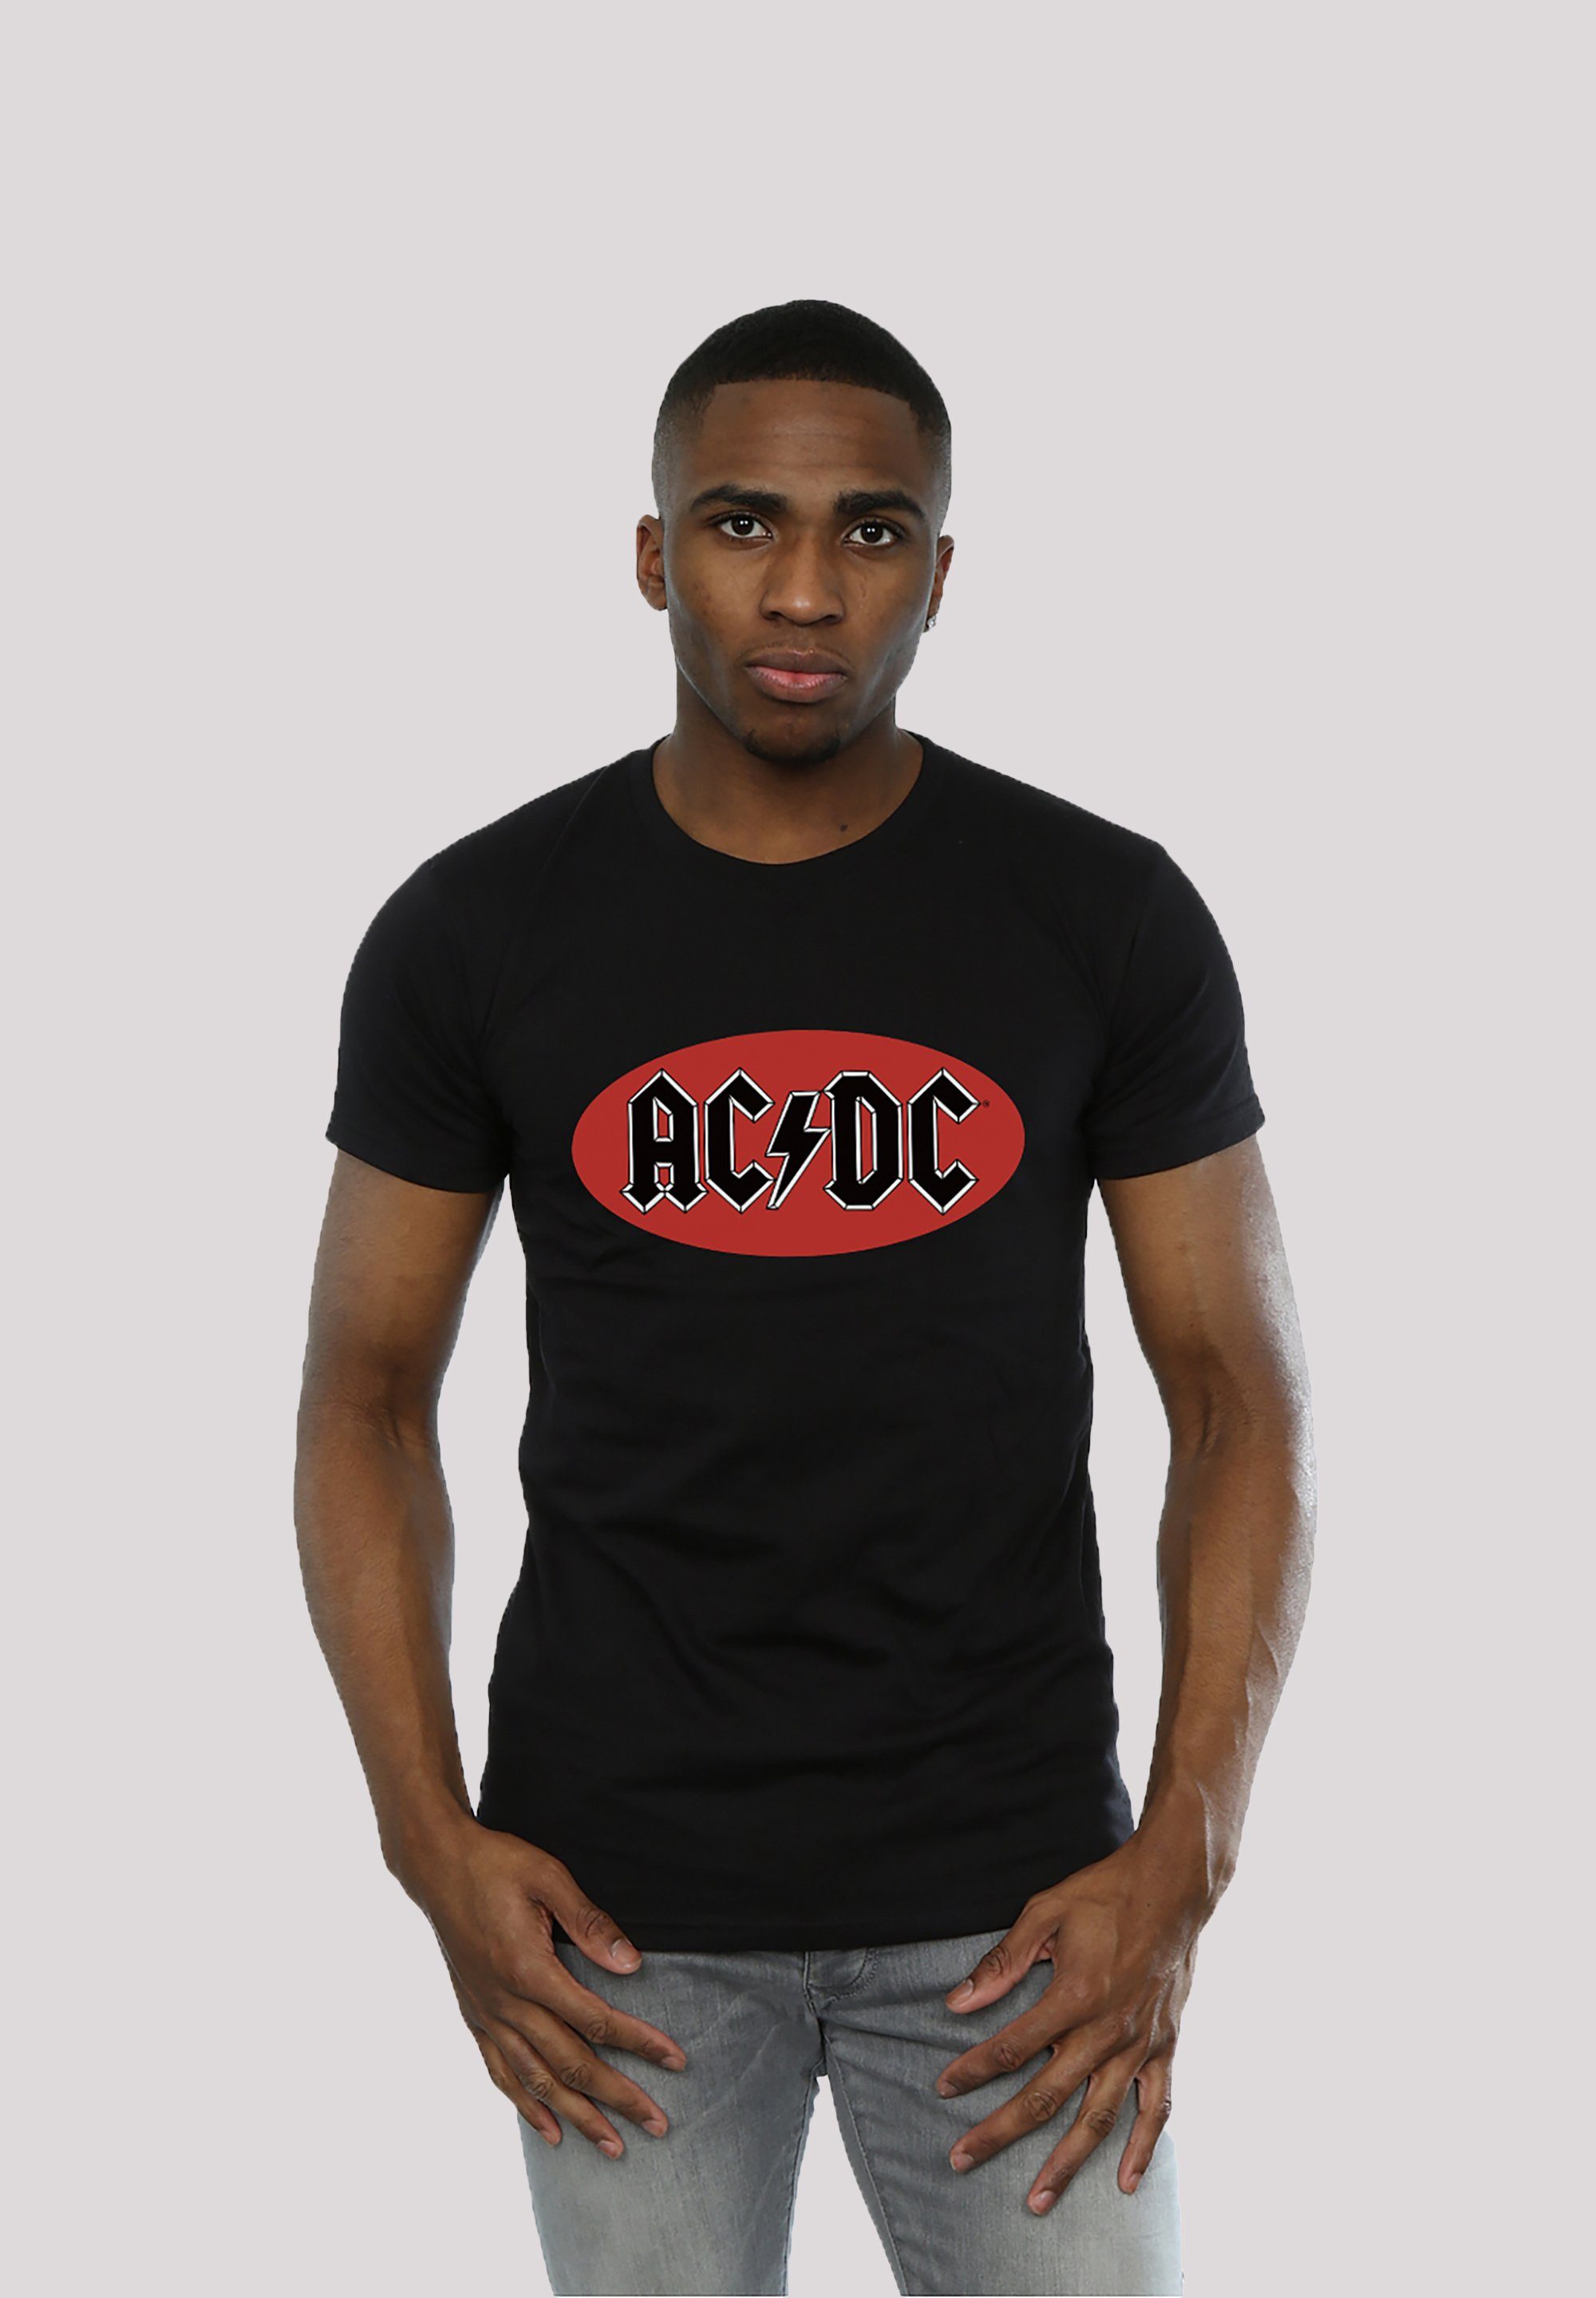 Print, Tragekomfort Kinder ACDC Baumwollstoff T-Shirt F4NT4STIC Herren Red hohem für & Circle weicher Logo Sehr mit